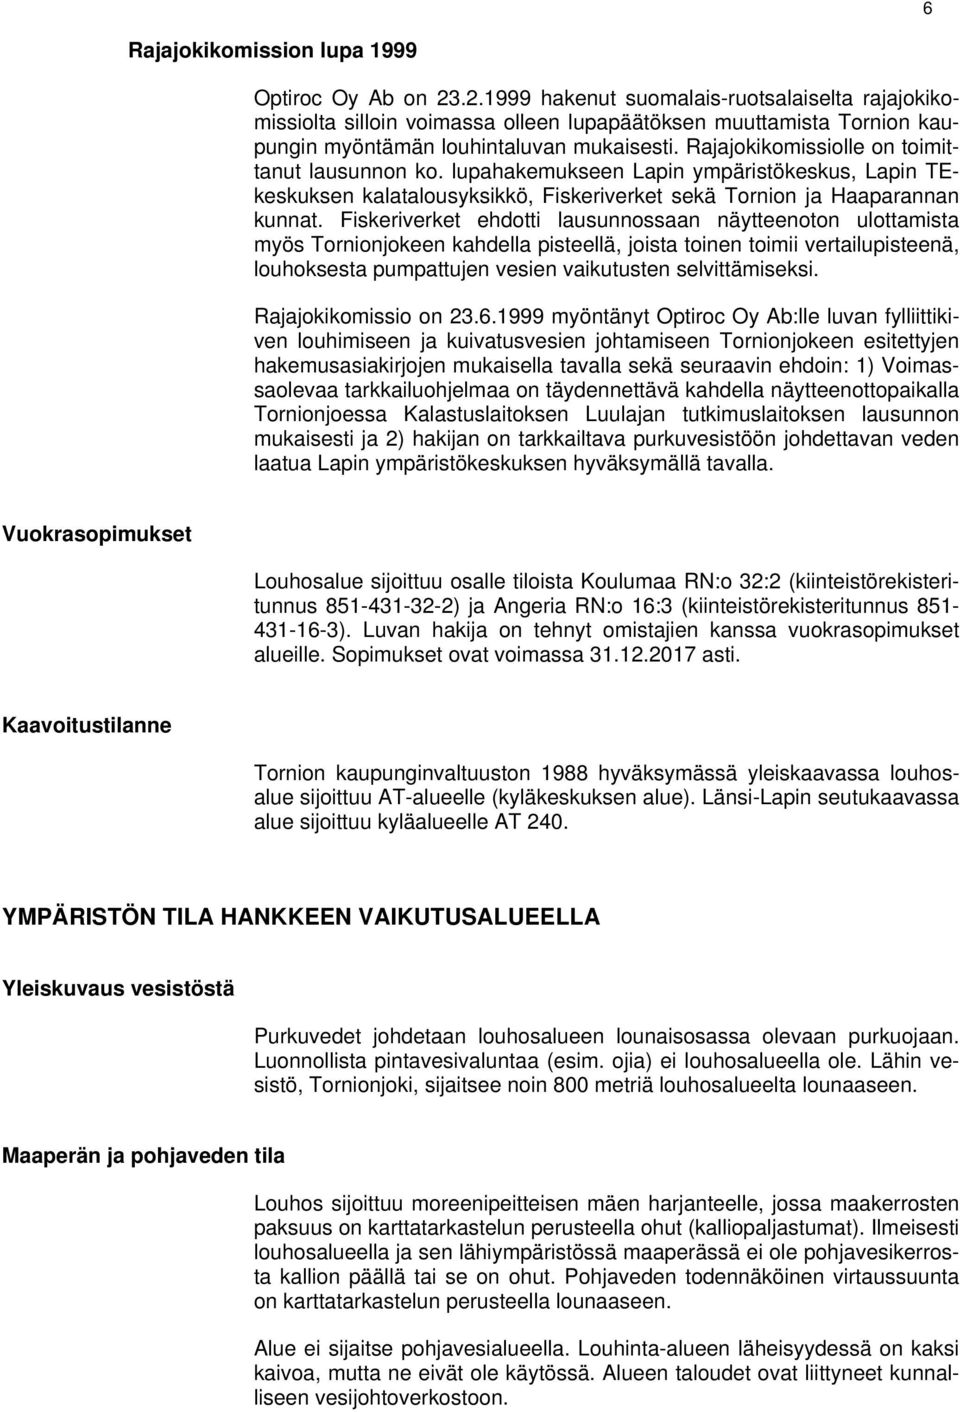 Rajajokikomissiolle on toimittanut lausunnon ko. lupahakemukseen Lapin ympäristökeskus, Lapin TEkeskuksen kalatalousyksikkö, Fiskeriverket sekä Tornion ja Haaparannan kunnat.